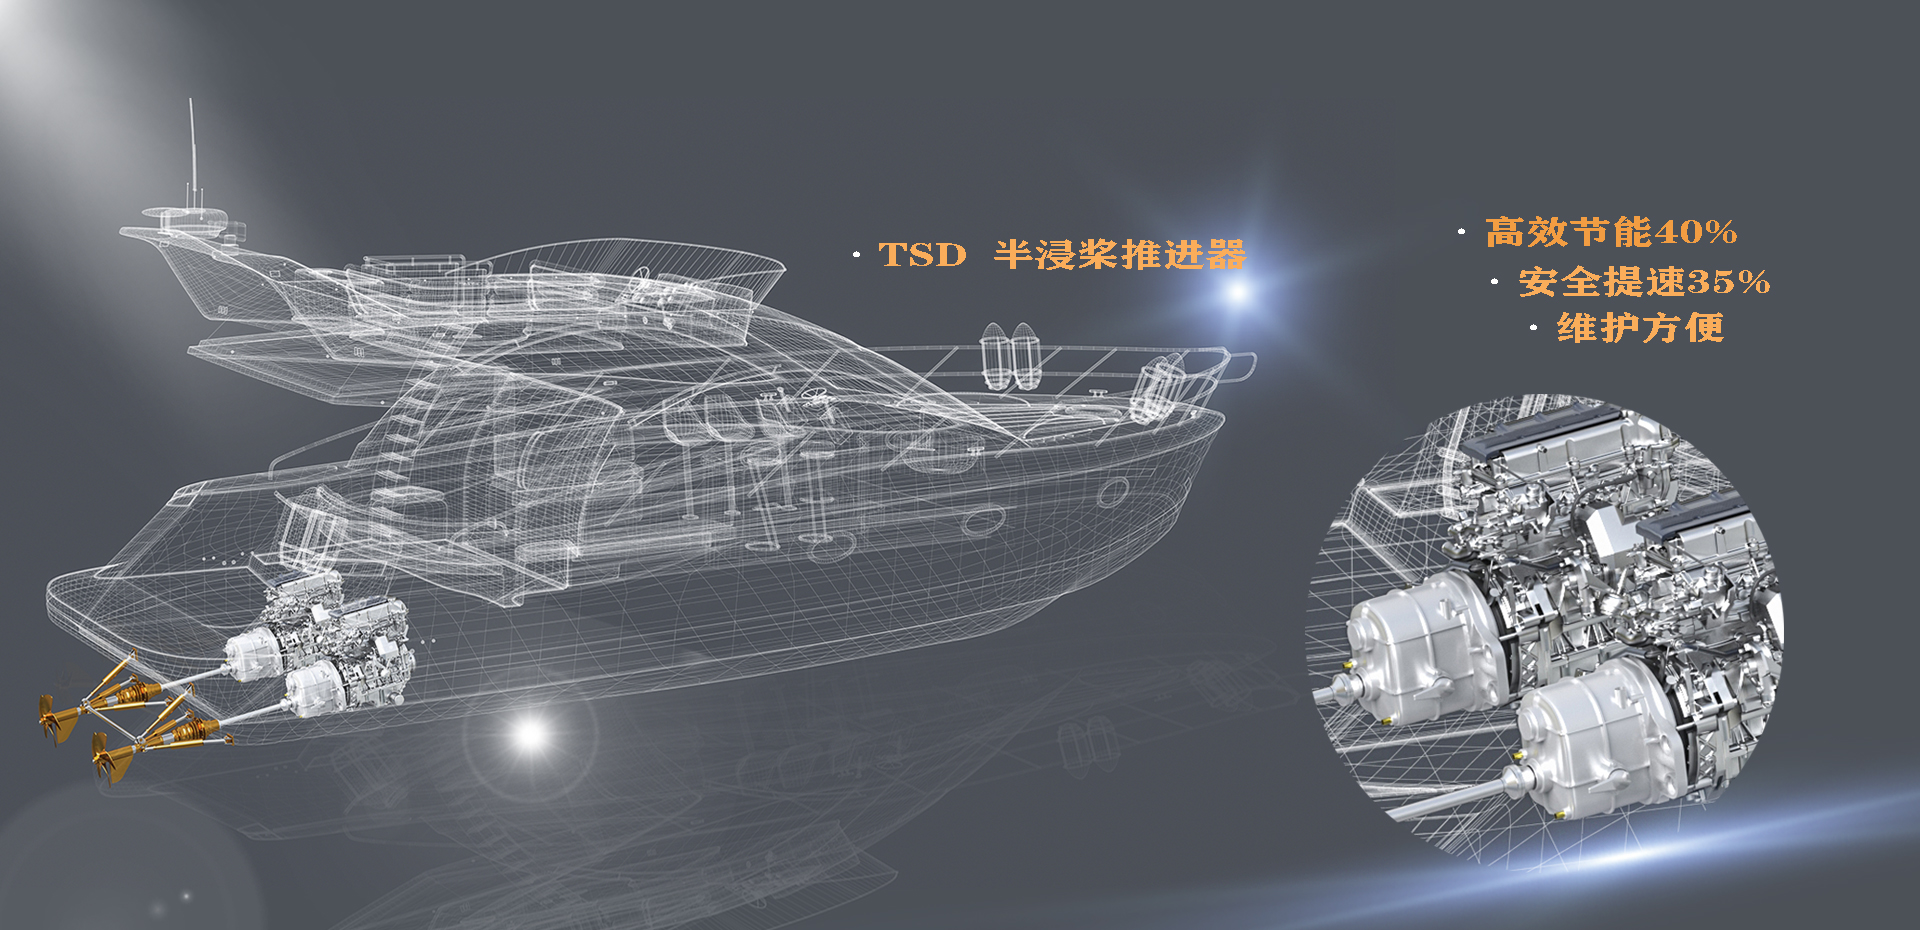 TSD半浸桨推进器高效节能40%、安全提速35%、维护方便